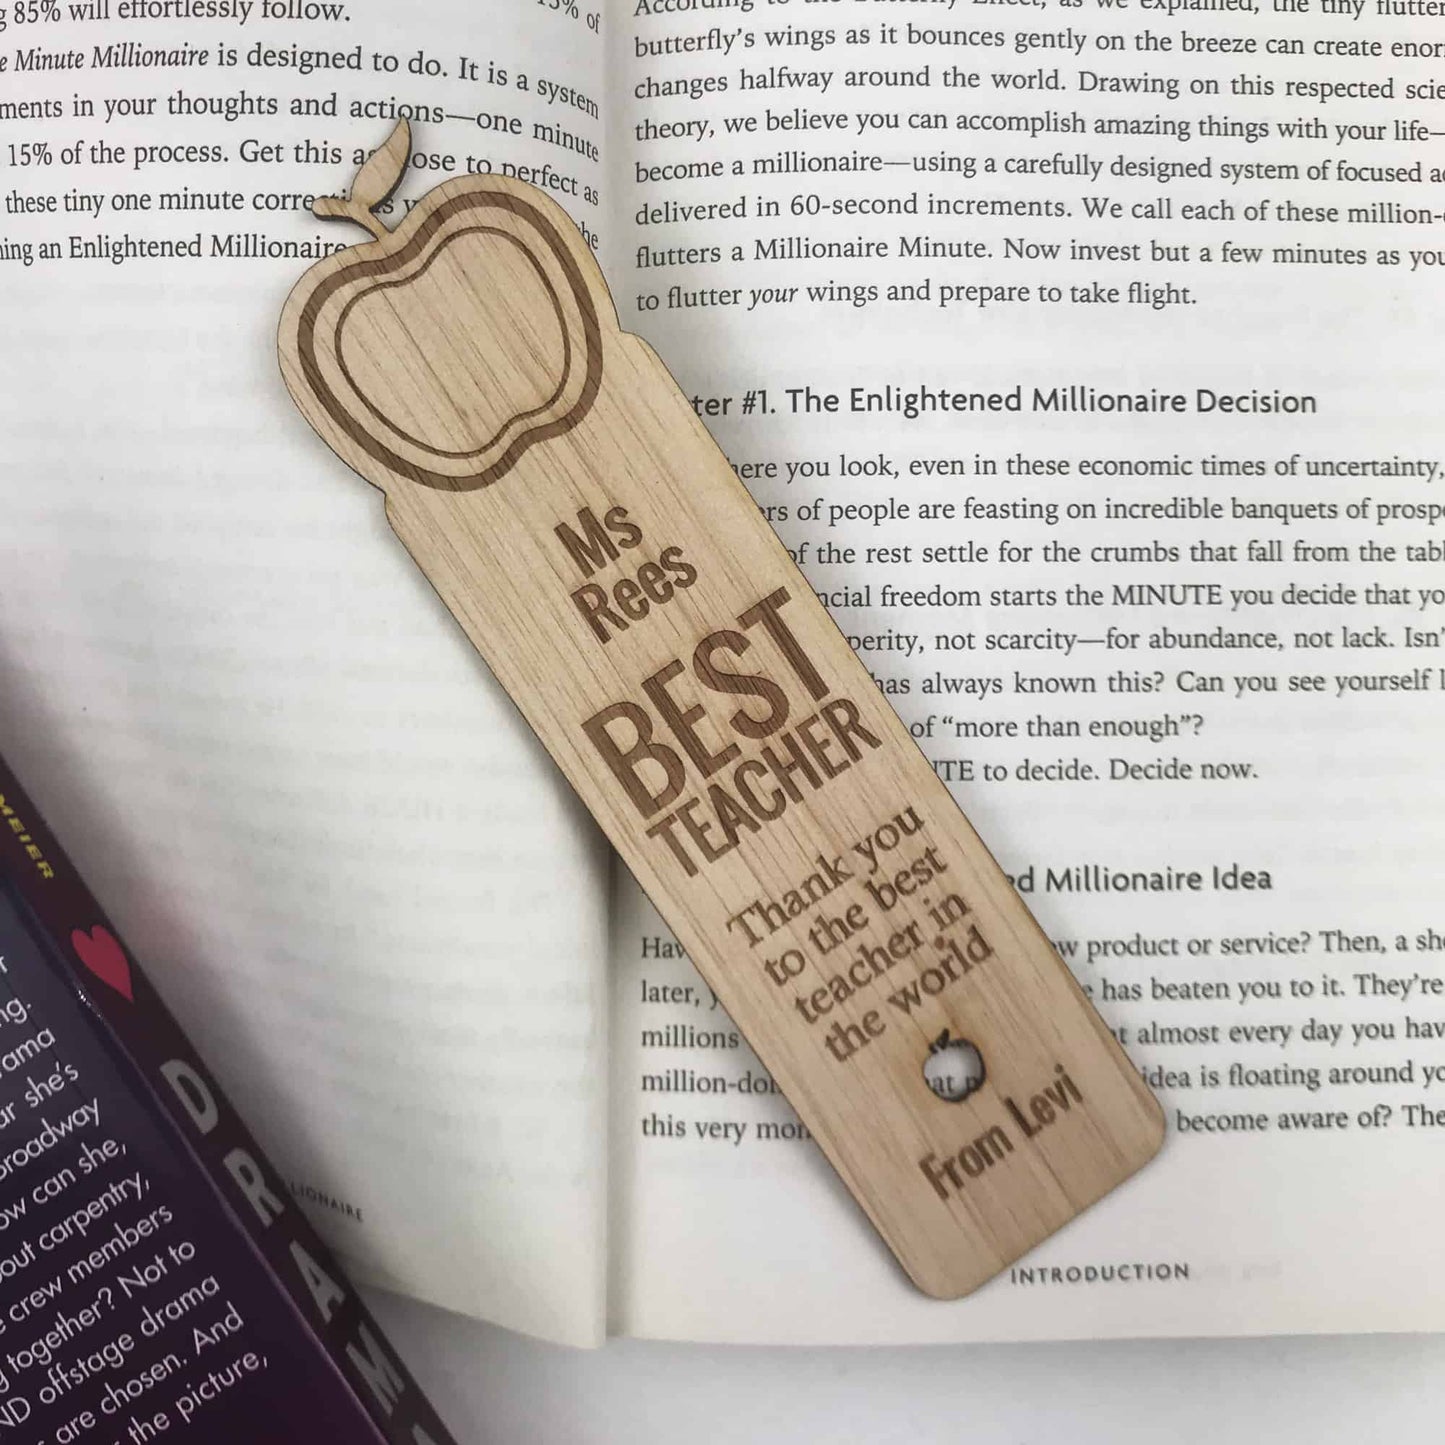 Teacher Bookmark